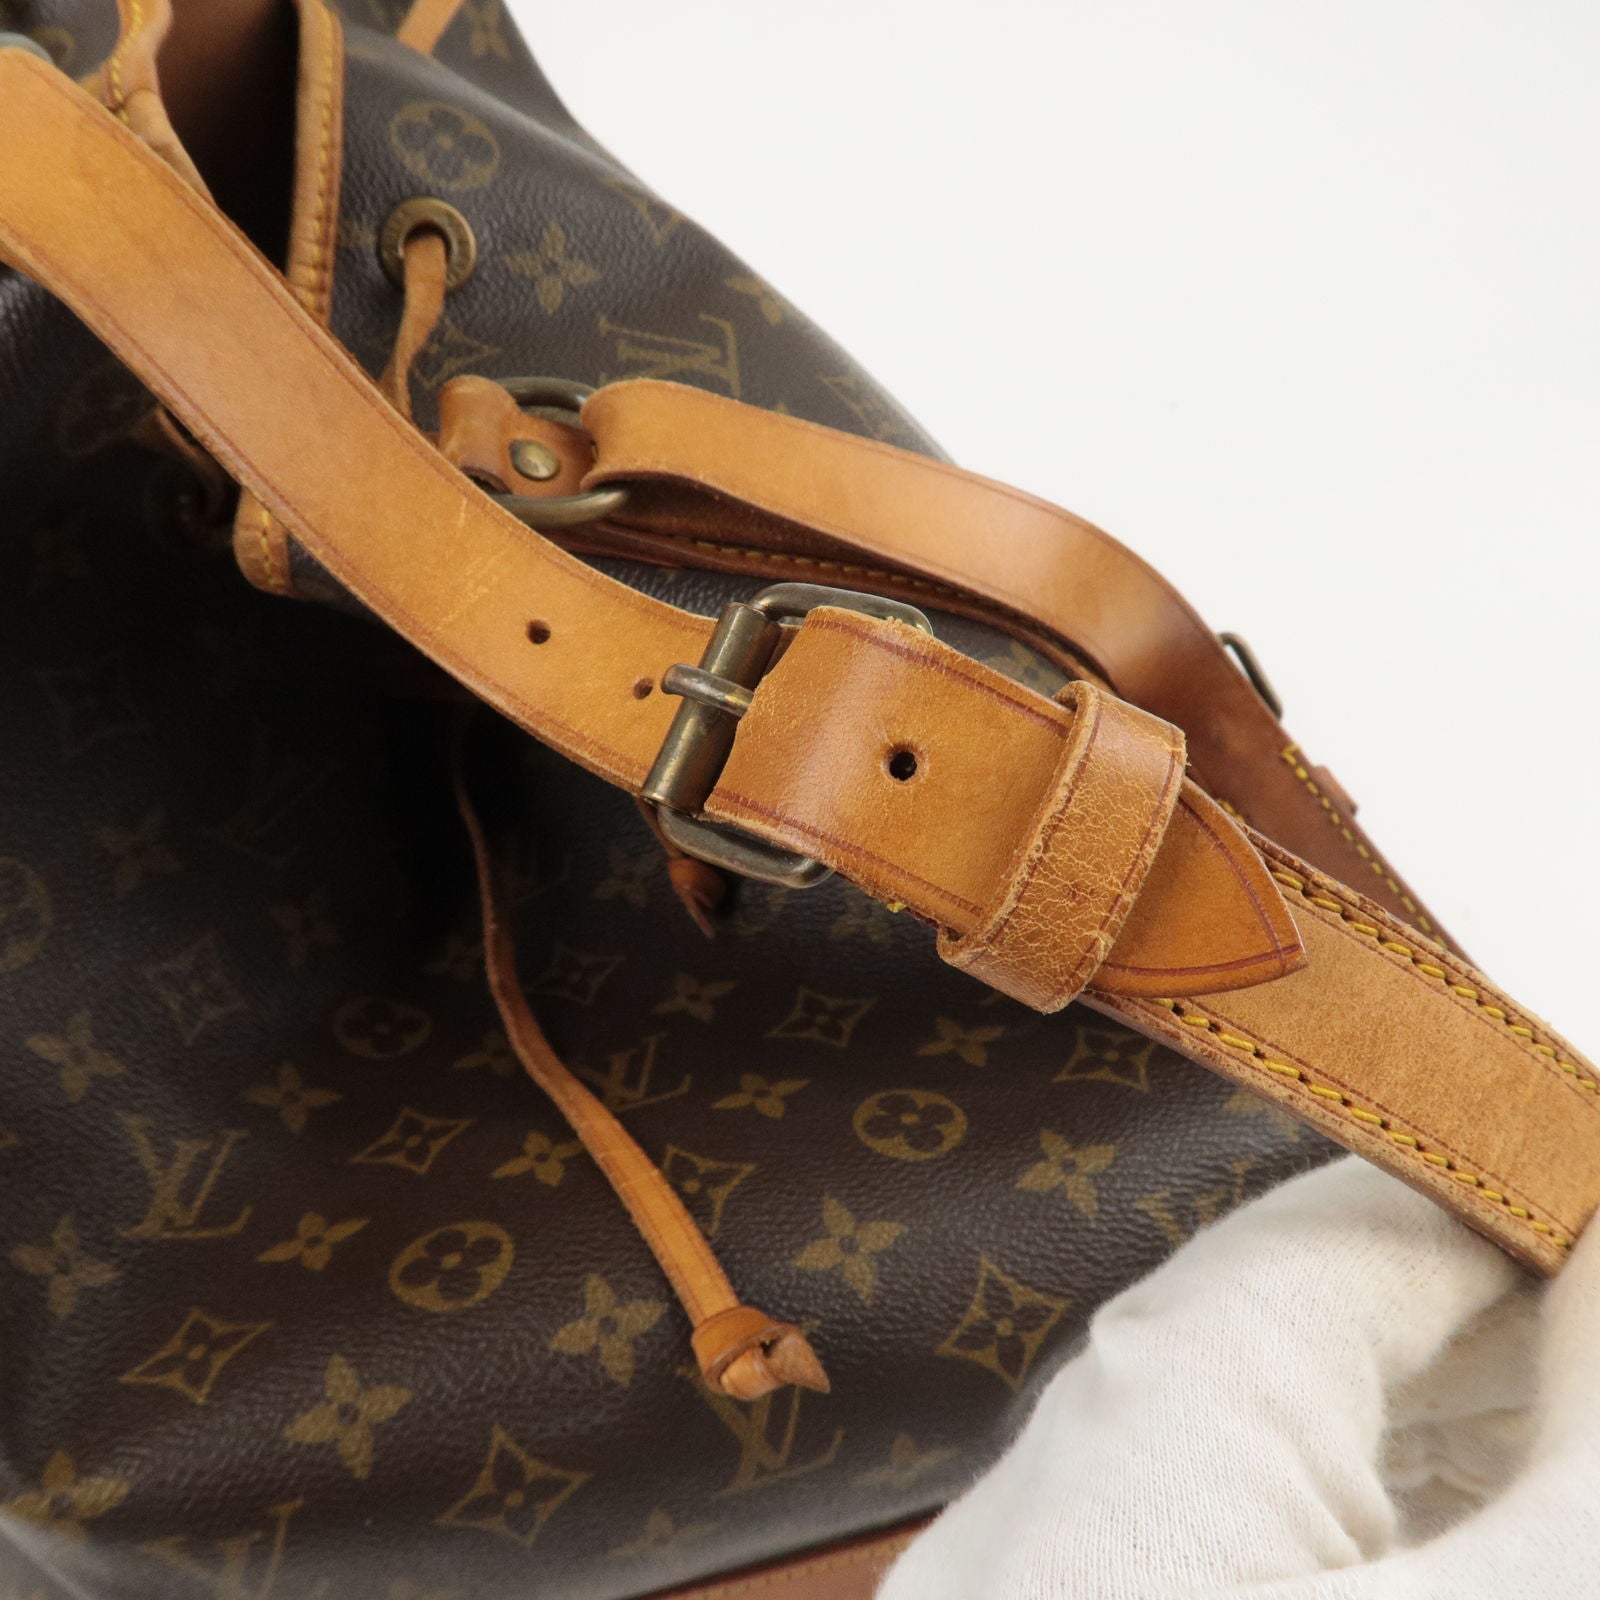 Louis Vuitton, Bags, Louis Vuitton Damier Ebene Cabas Beaubourg Unisex  Mens Womens Canvas Tote Bag